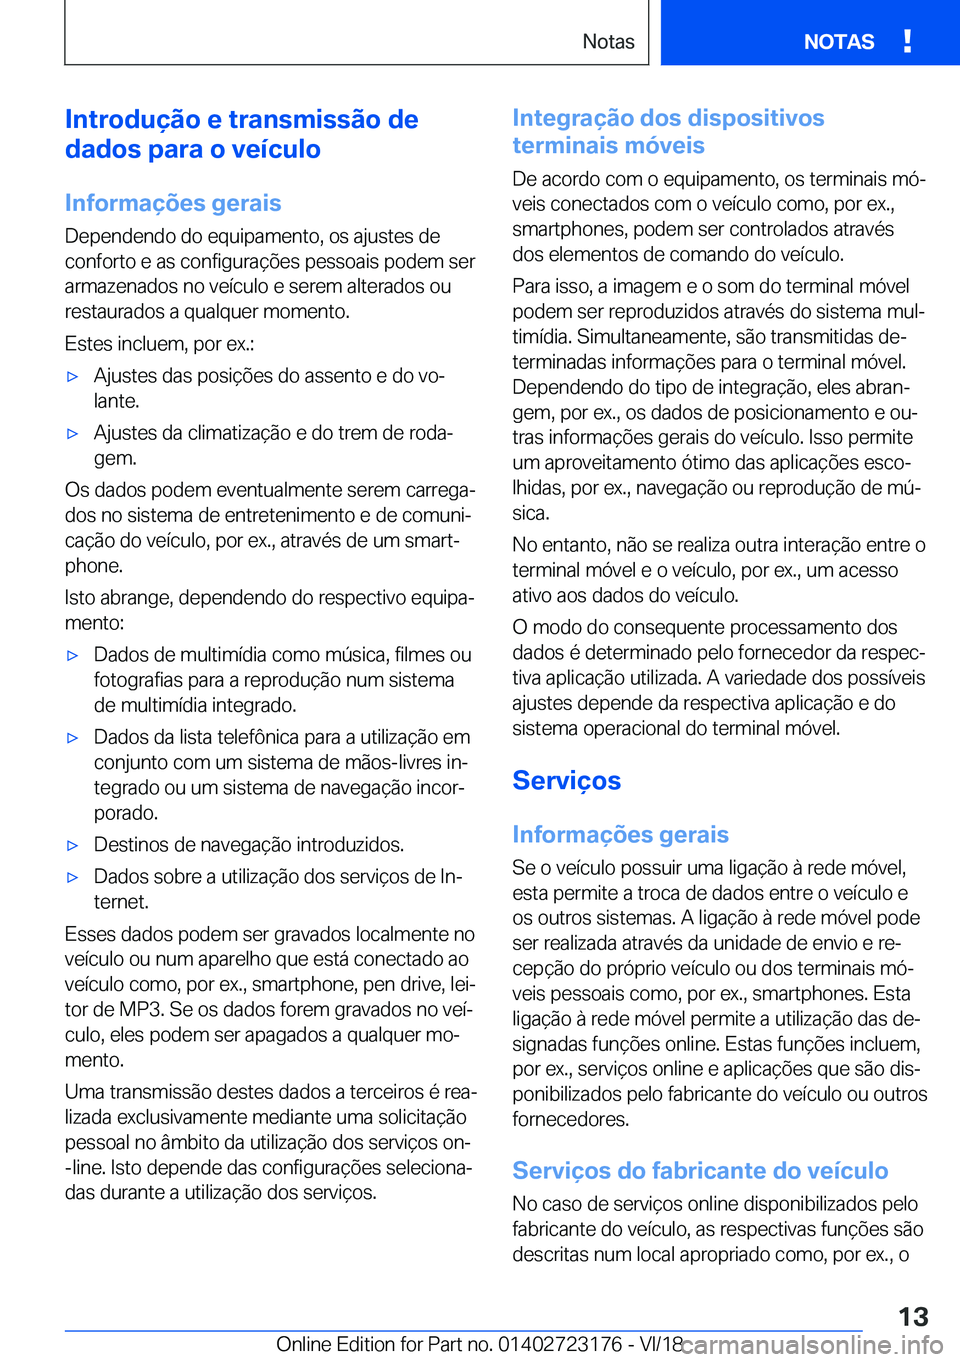 BMW 4 SERIES GRAN COUPE 2019  Manual do condutor (in Portuguese) �I�n�t�r�o�d�u�